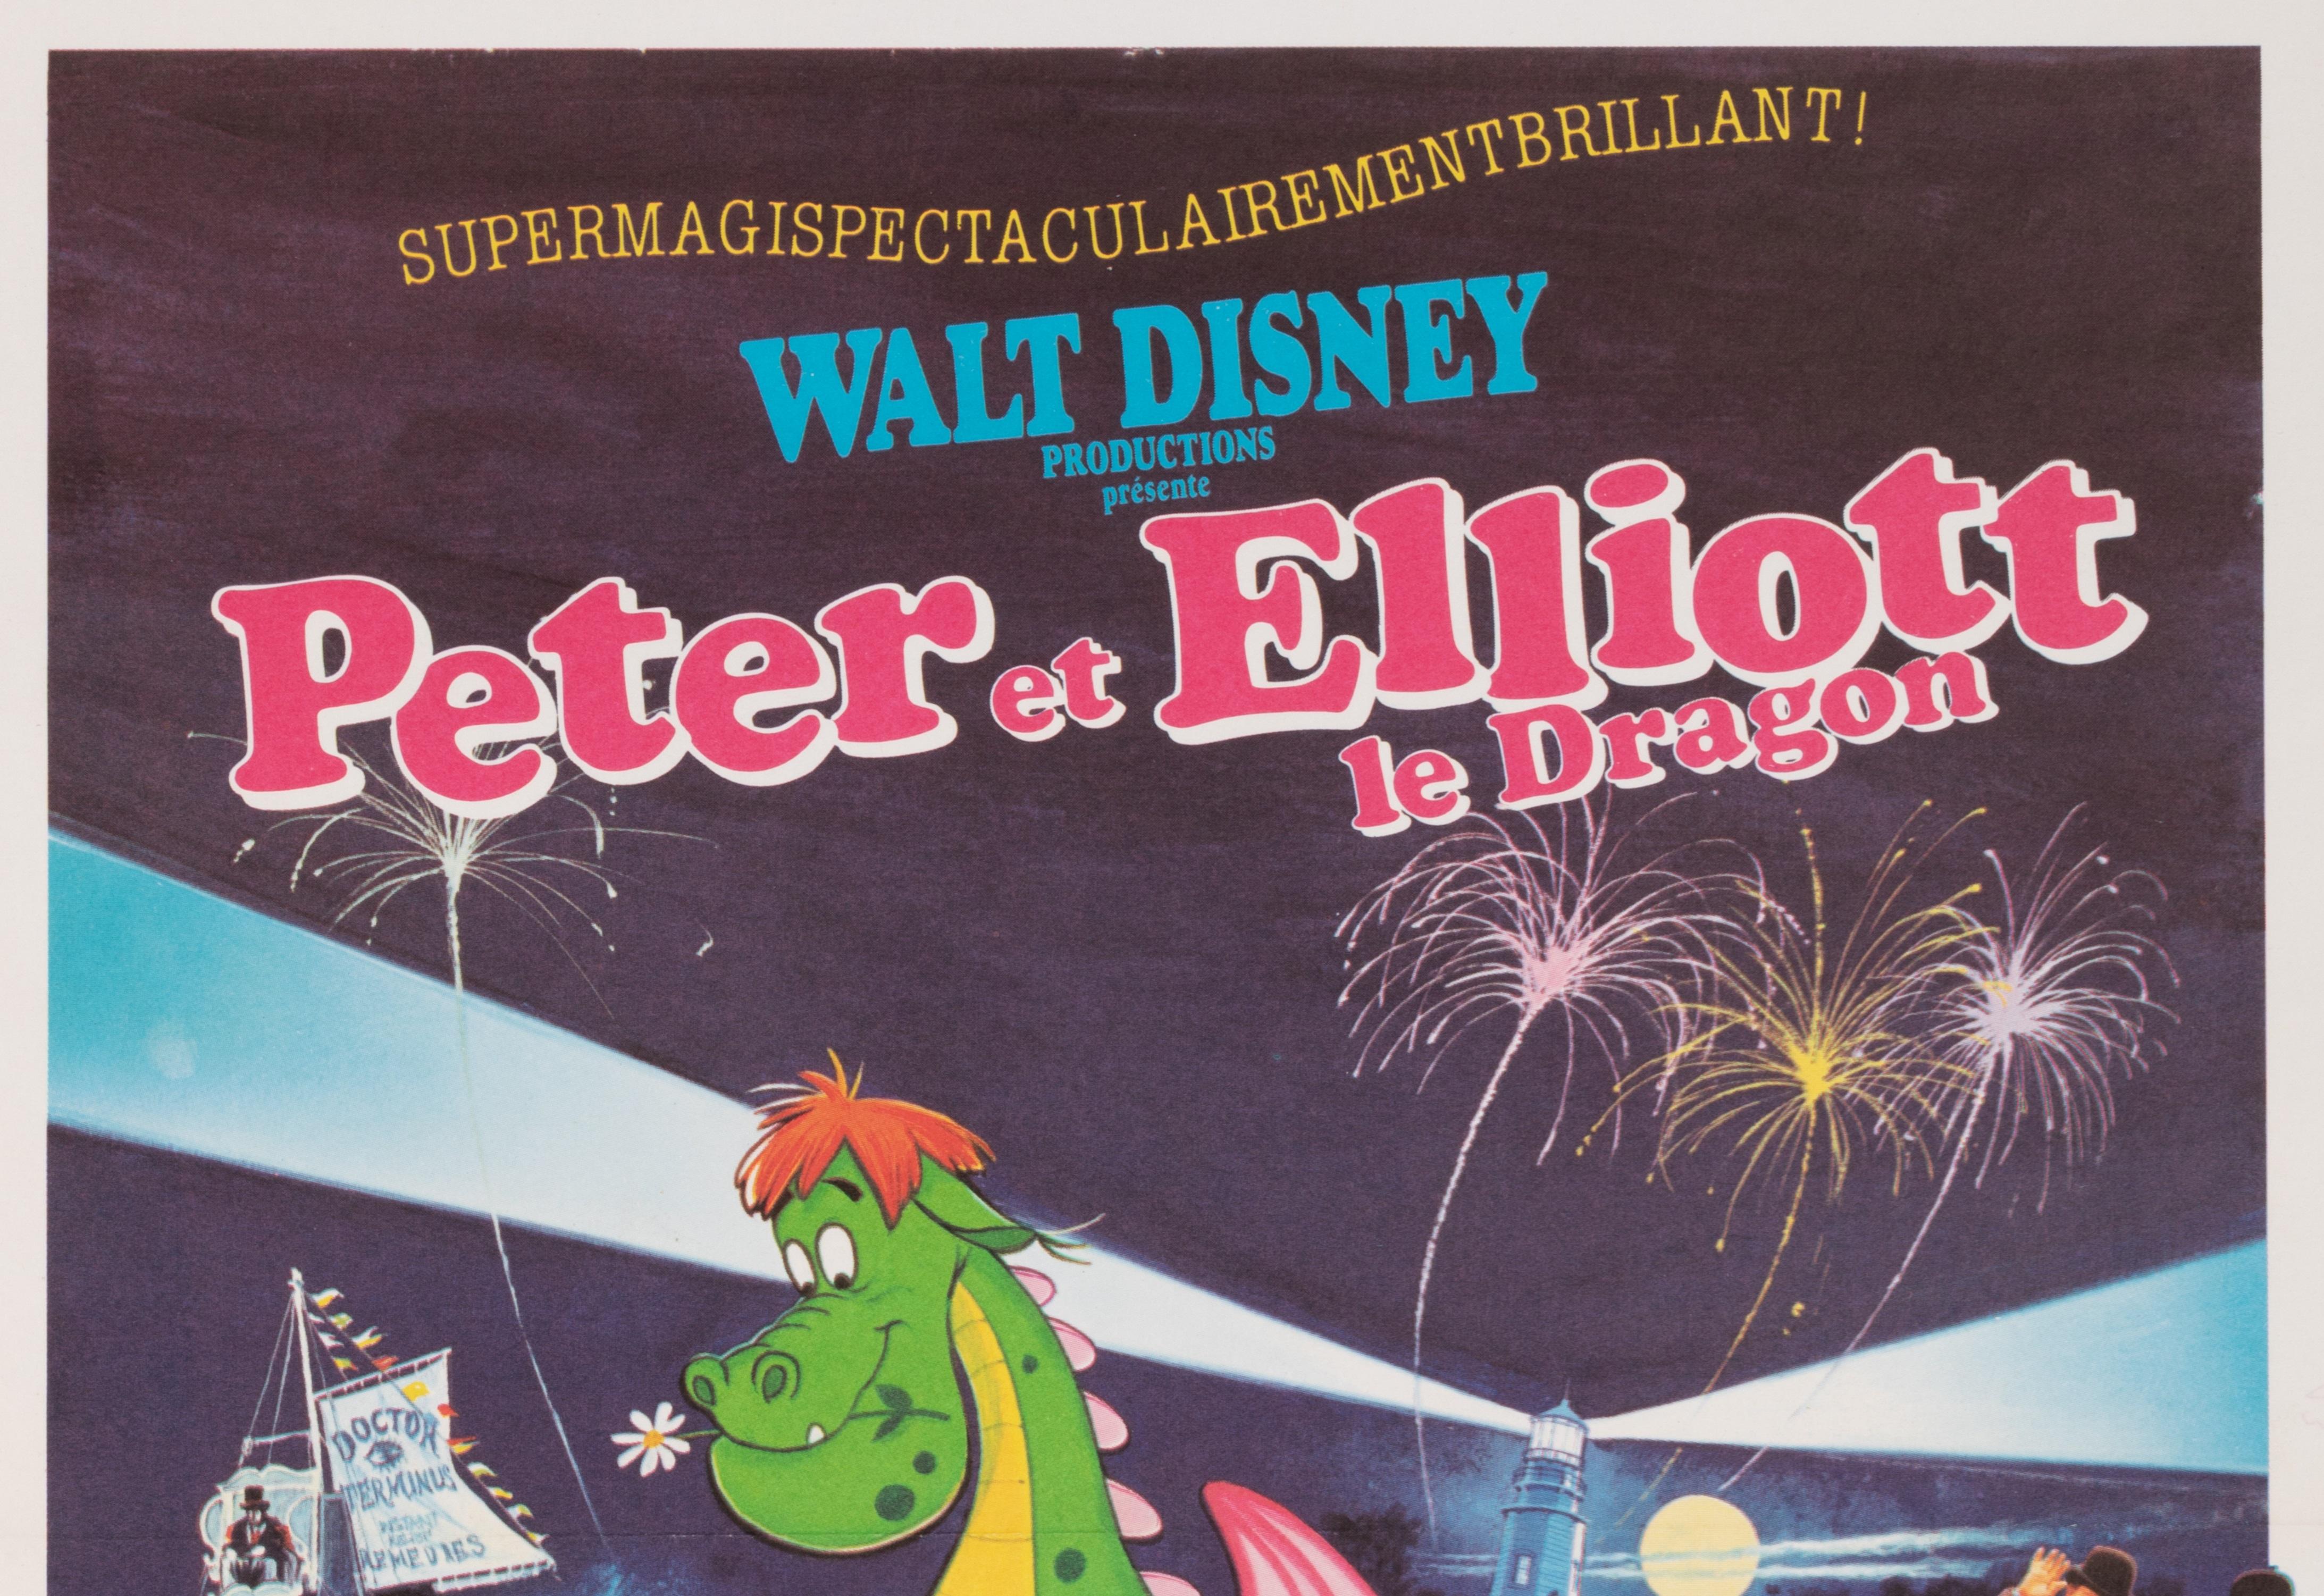 Walt Disney-Plakat für die Werbung für den Zeichentrickfilm Peter und Elliotts. 

Künstler: Anonym
Titel: Peter und Elliott - Der Drache
Datum: ca. 1980
Größe (B x H): 15,7 x 21,7 in / 40 x 55 cm
Druckerei: Ets St martin Imp, 92 Asnieres
MATERIALIEN